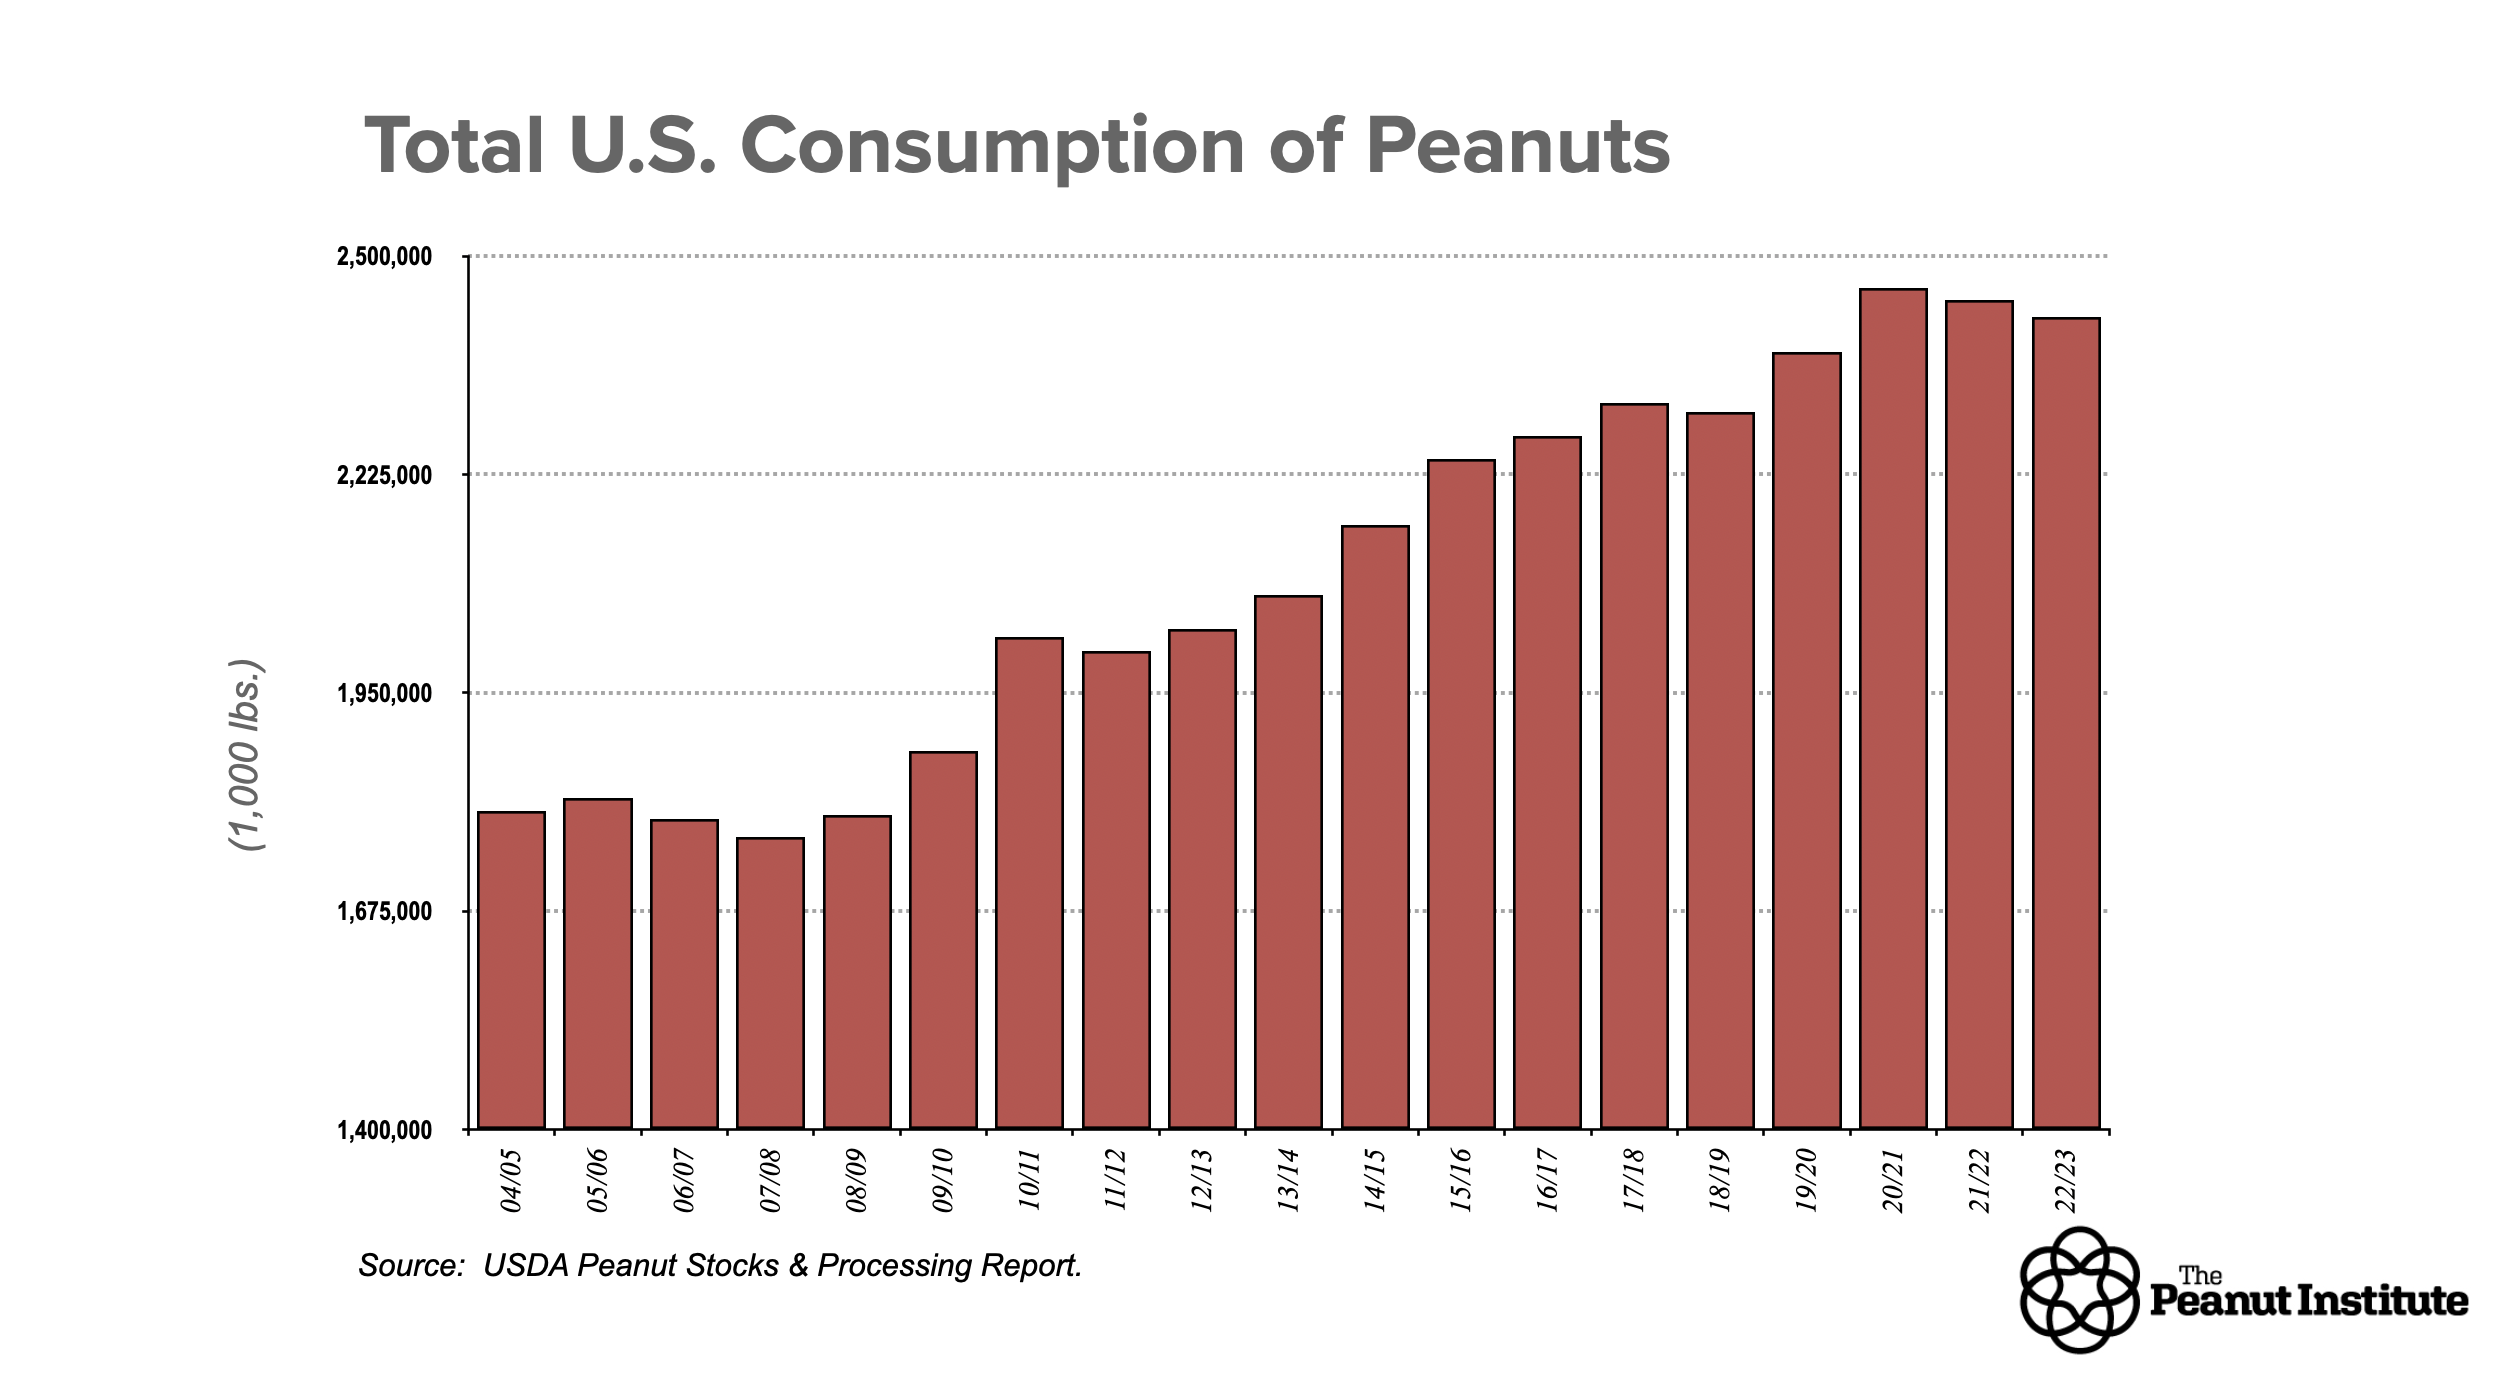 Total Consumption of Peanuts